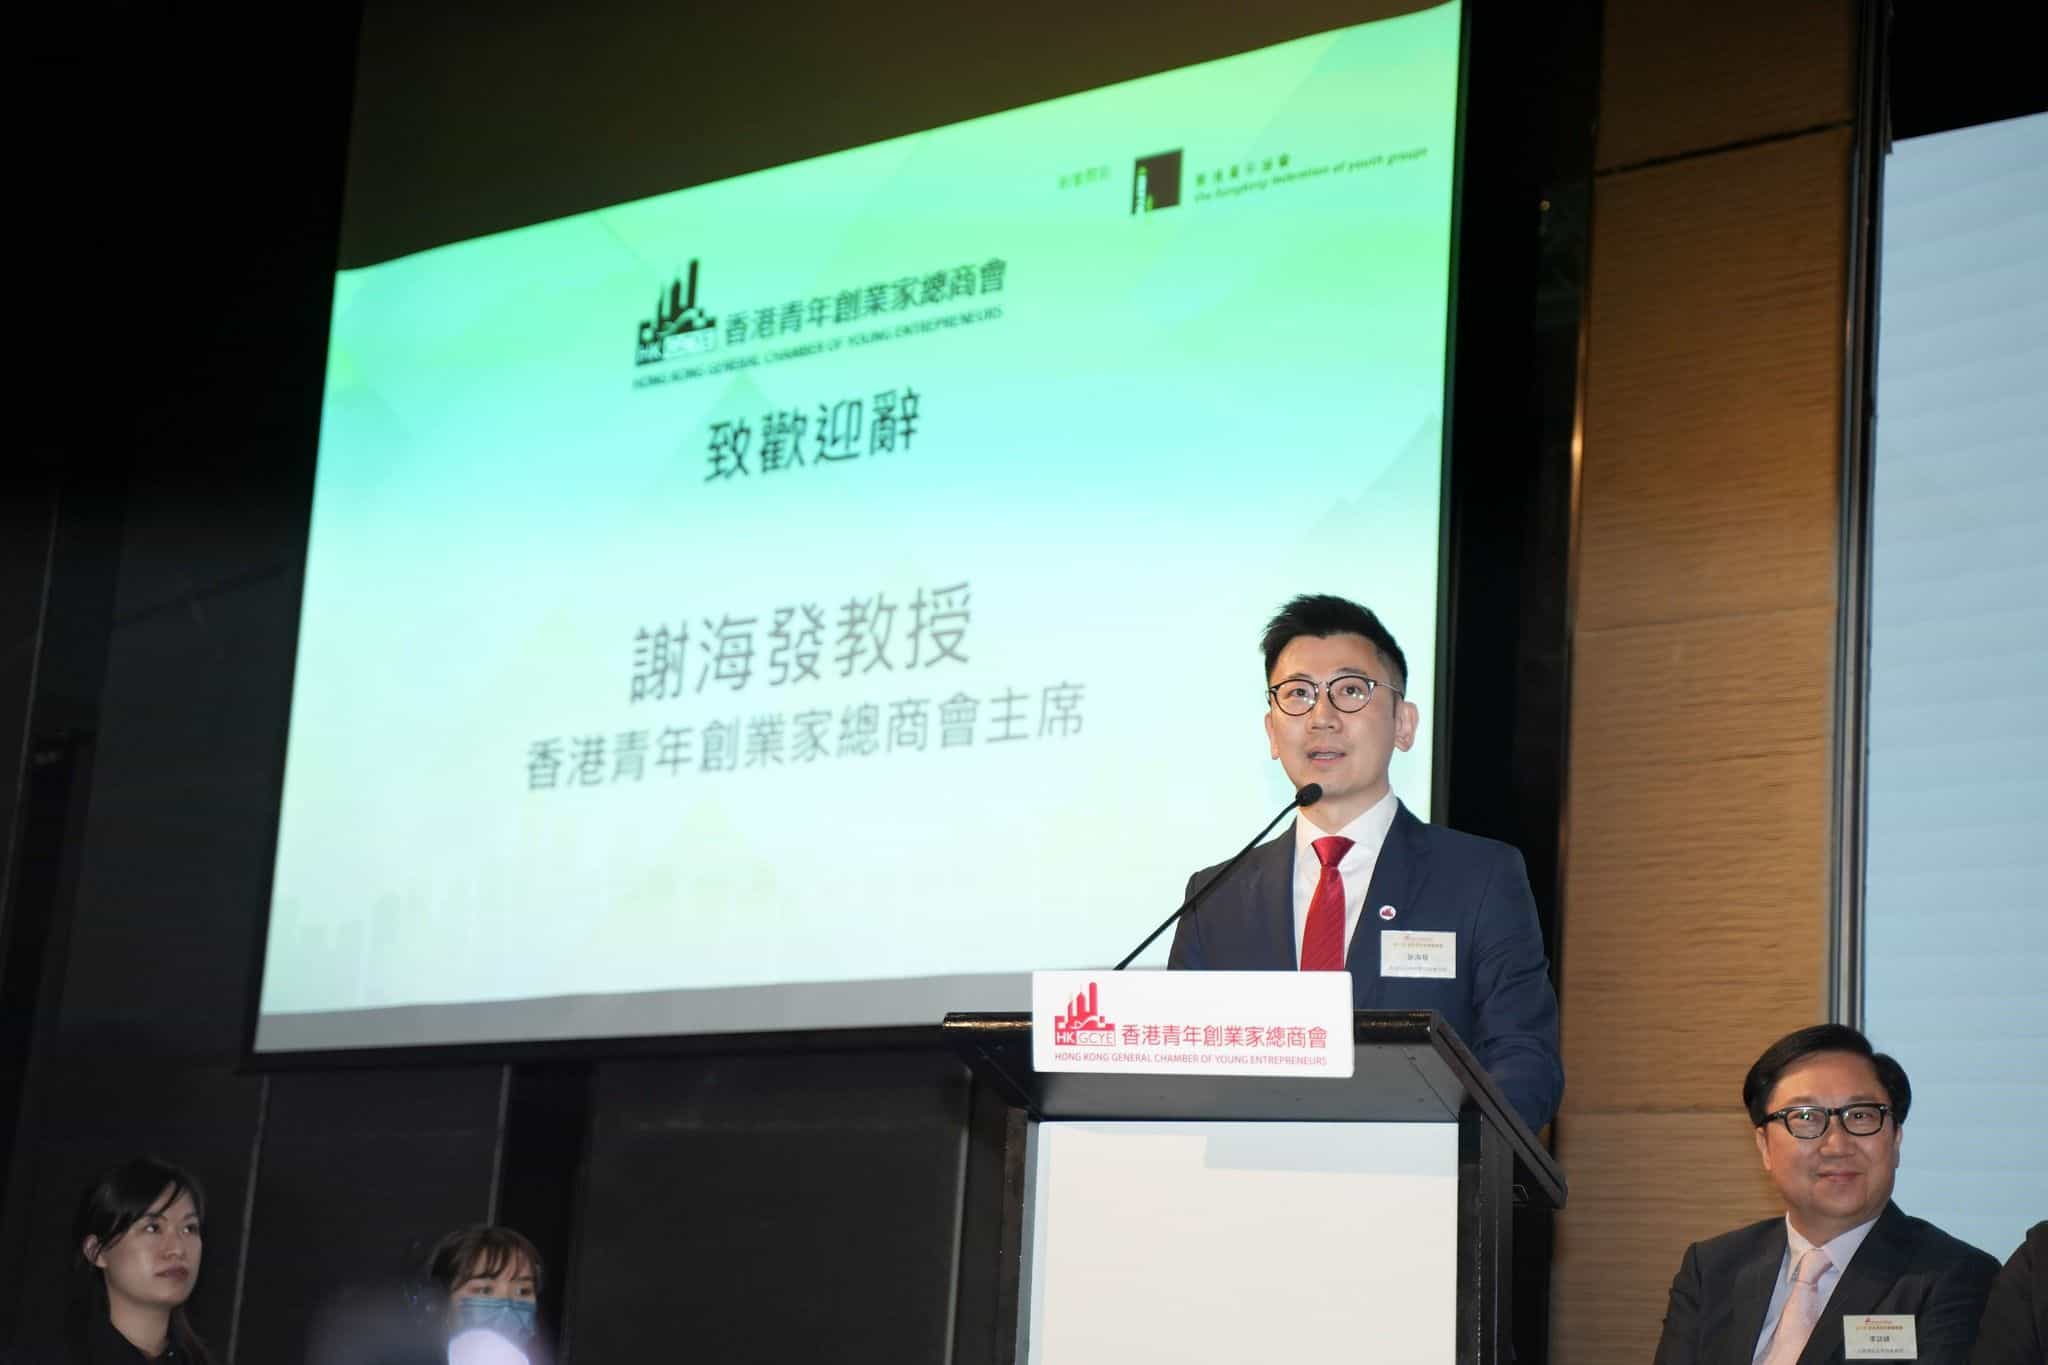 香港青年創業家總商會 - 第八屆董事局周年就職晚宴暨「千名青年創業家內地行」啟動禮